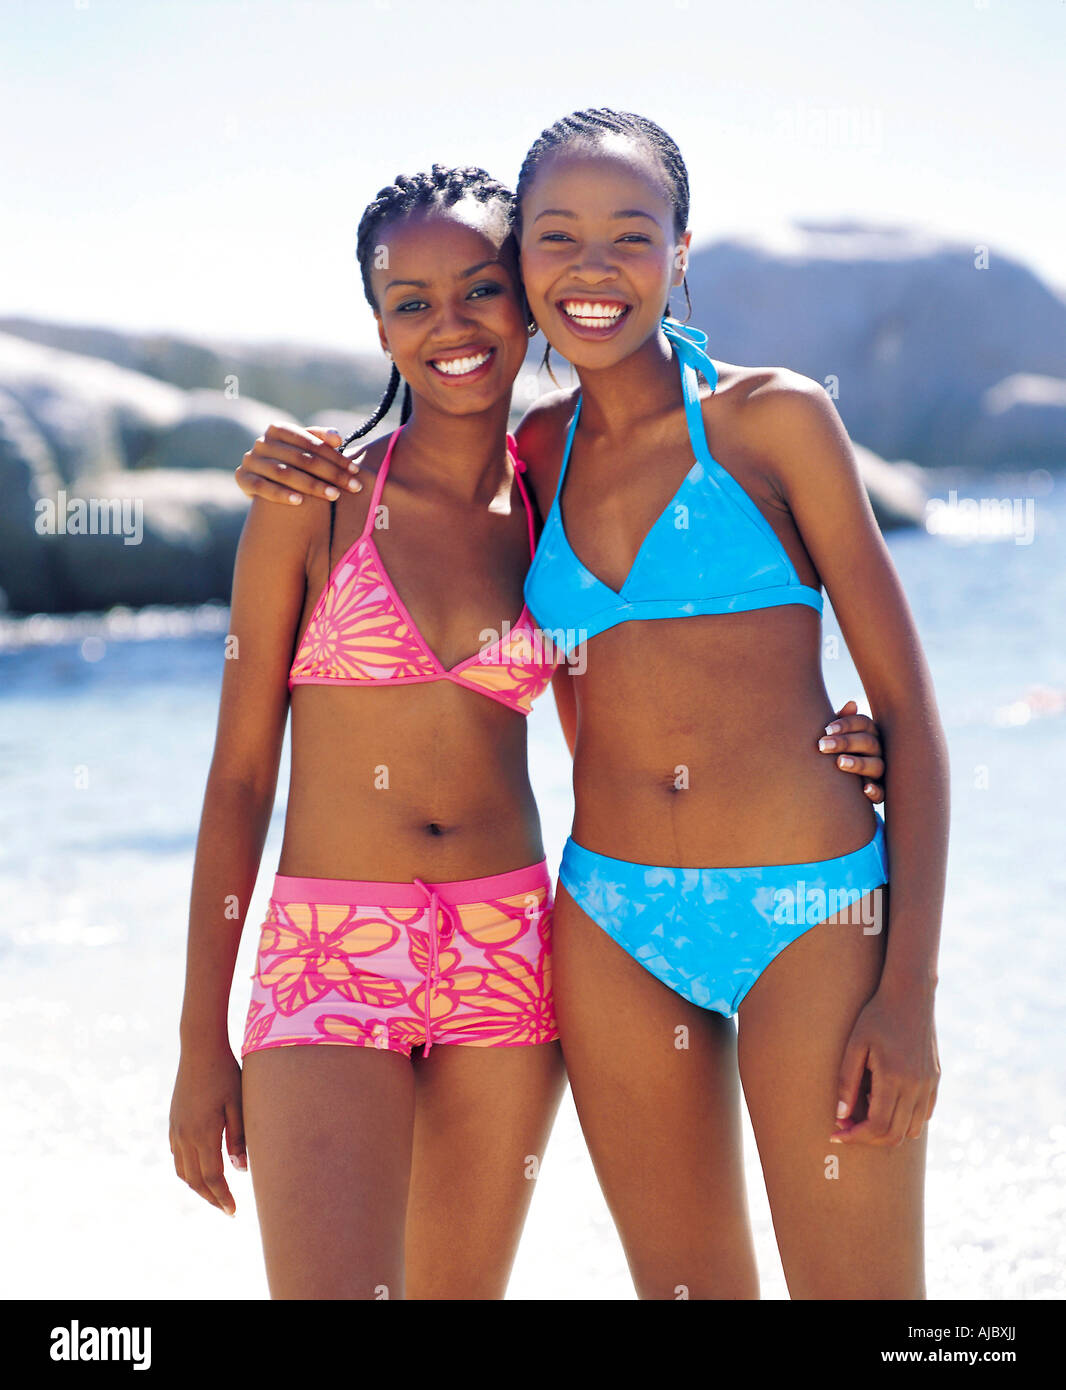 Deux femme africaine sur la plage en bikini Photo Stock - Alamy